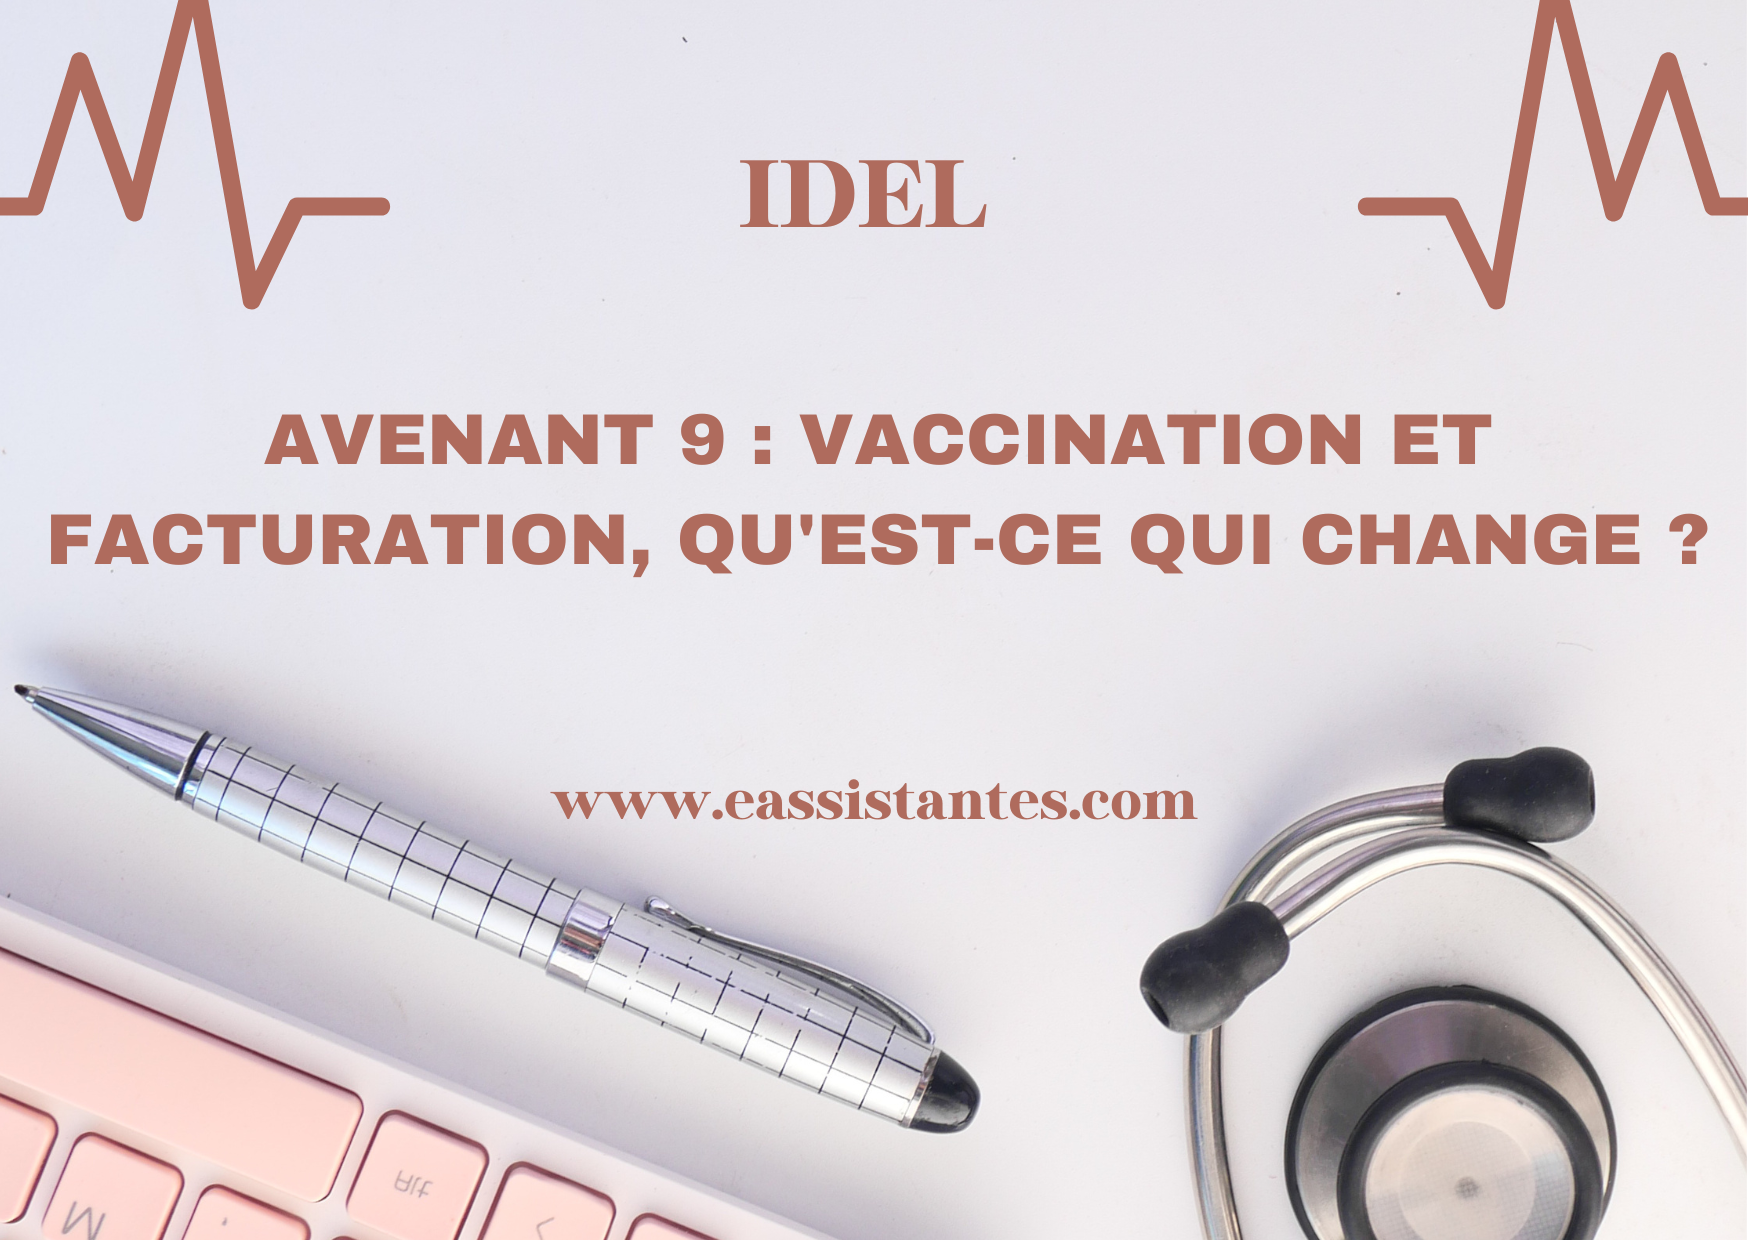 Avenant 9 :  Vaccination par les IDEL, facturation qu'est-ce qui change ?